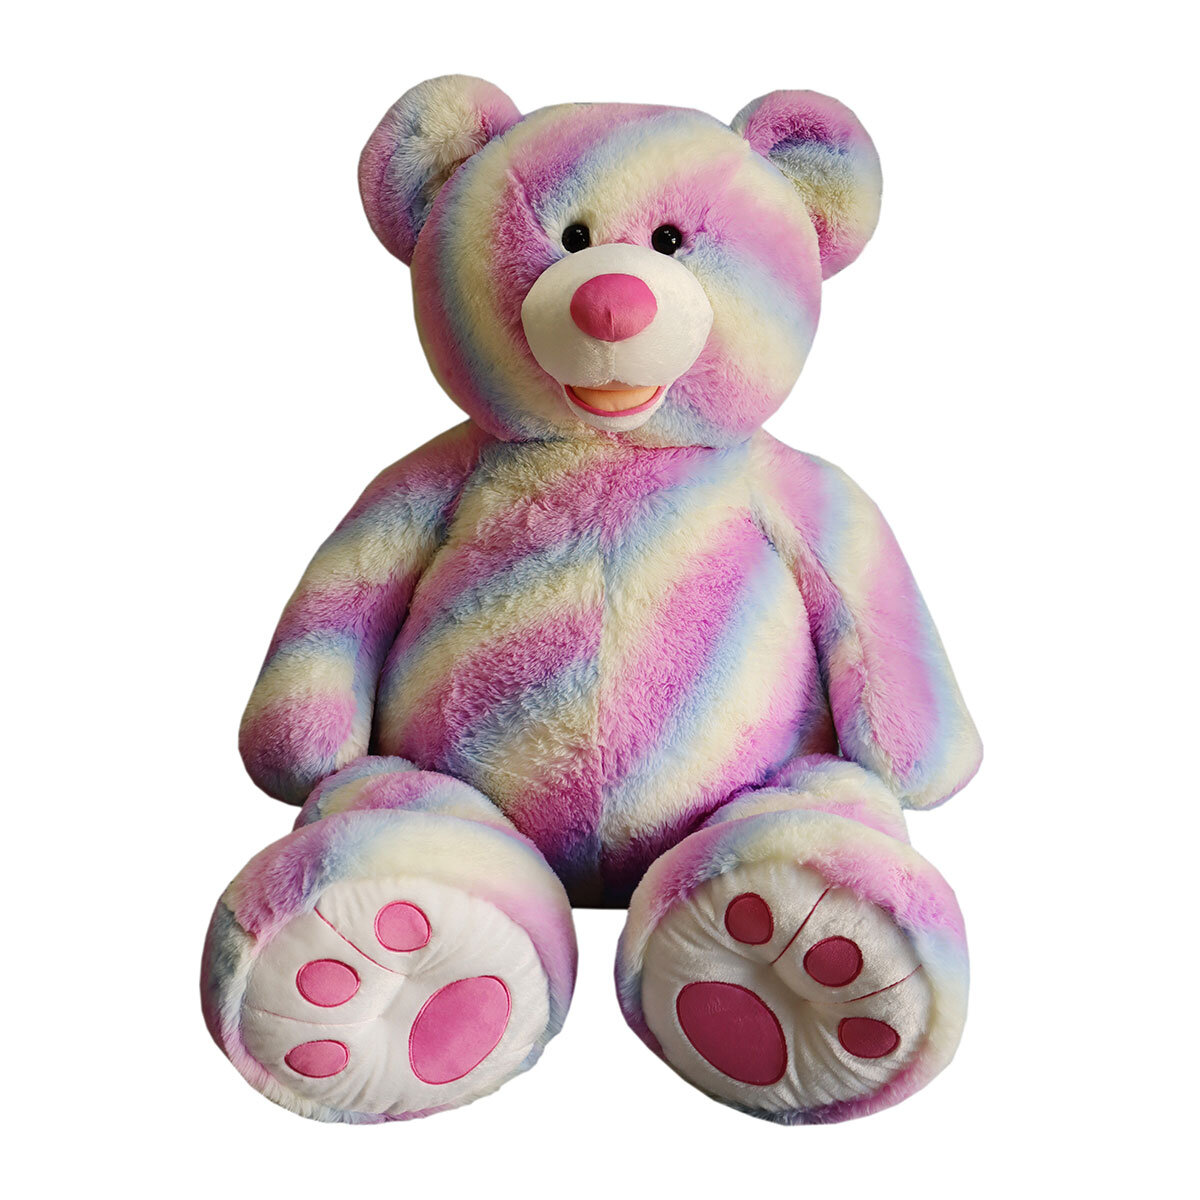 Buy 53" Rainbow Bear Lifestyle2 Image at Costco.co.uk